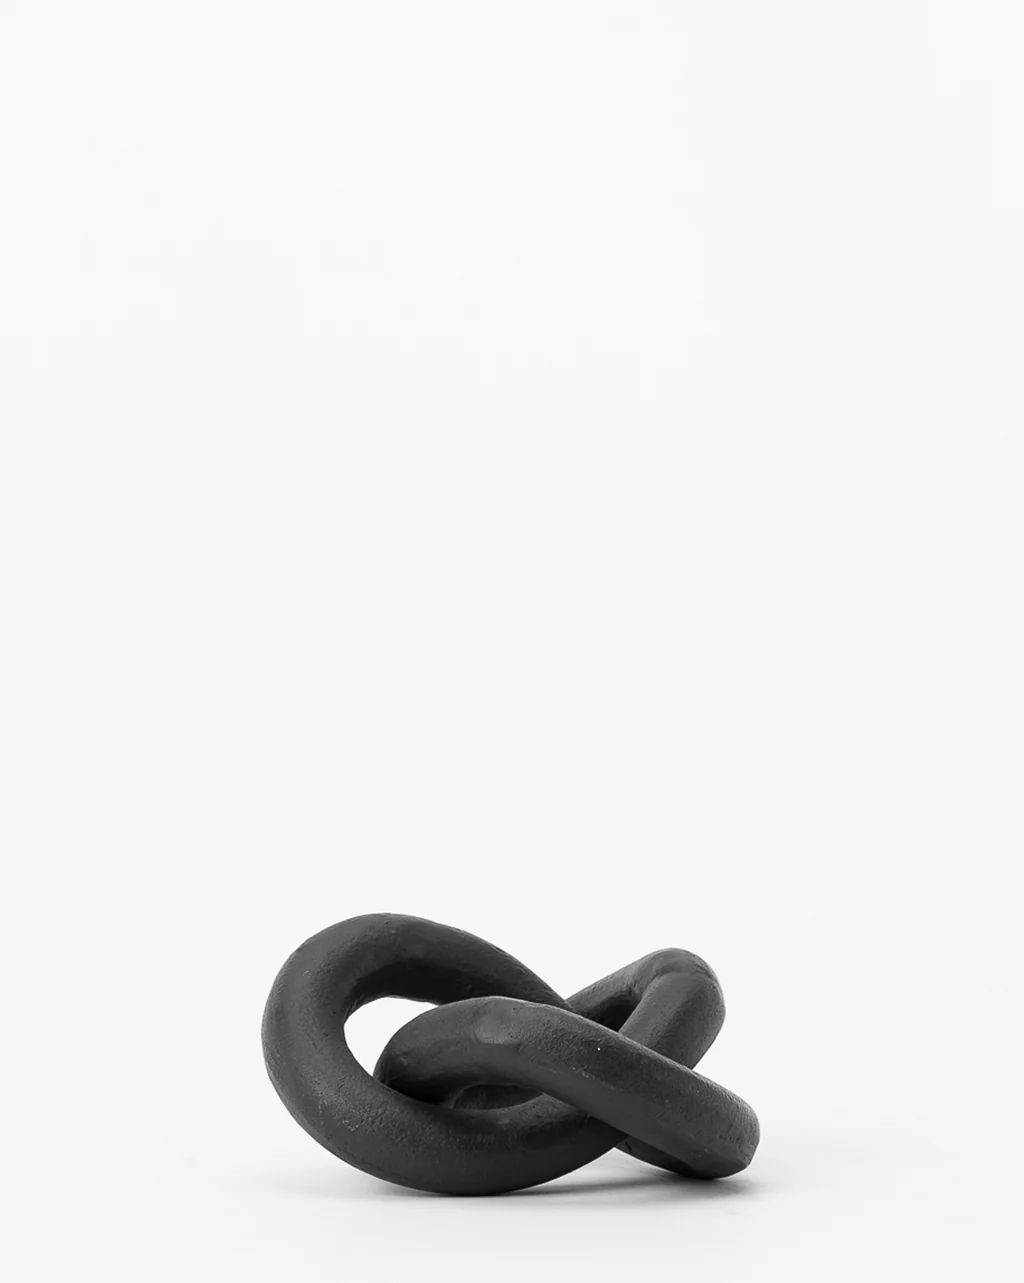 Black Infinity Loop | McGee & Co. (US)